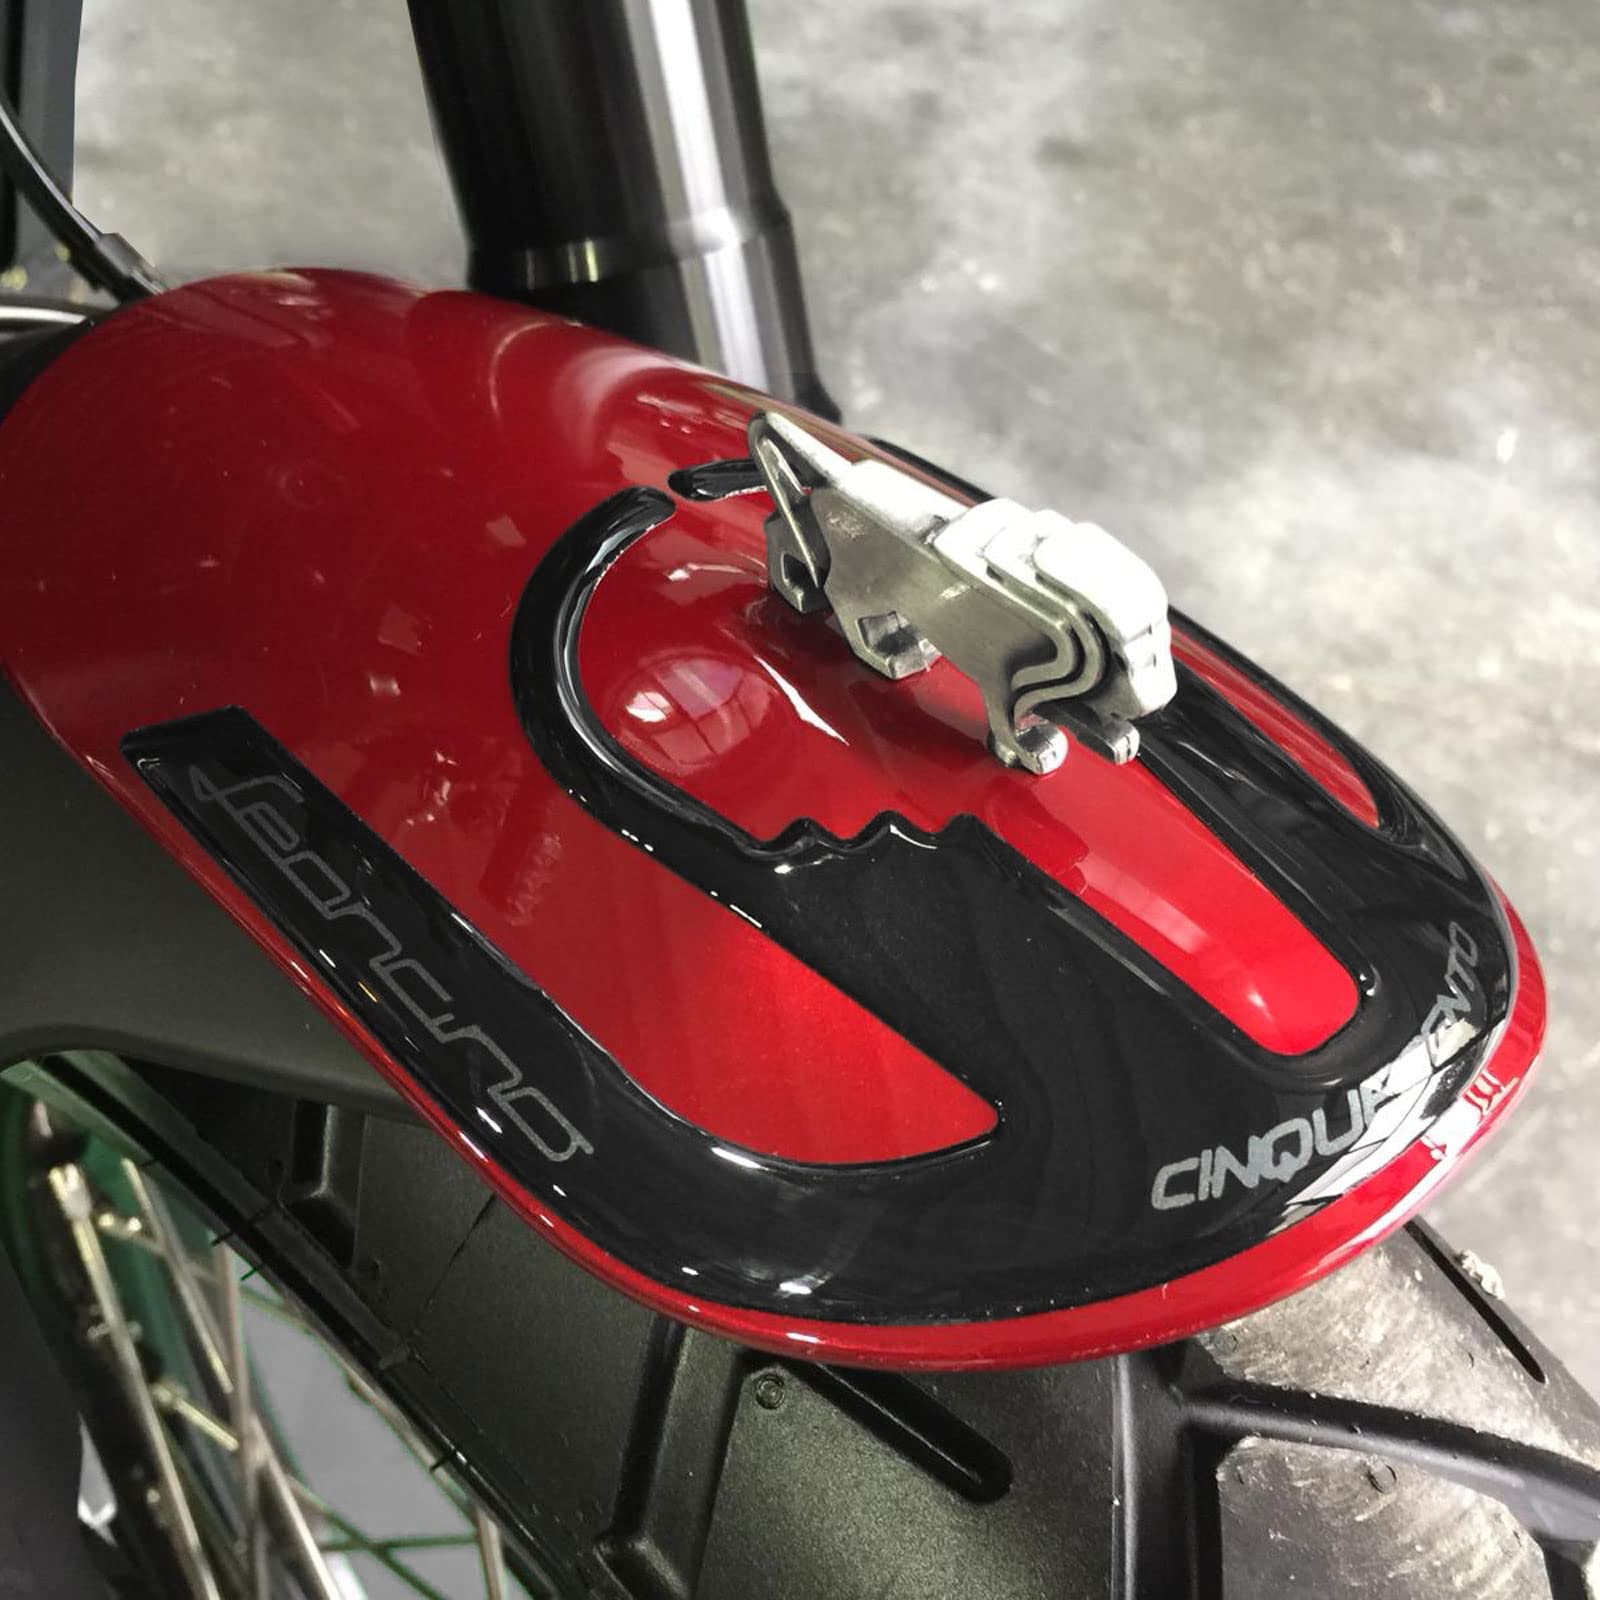 Resin Bike Aufkleber für Motorrad Kompatibel mit Benelli Leoncino 500 2017-2020. Vorderen Kotflügelschutz vor Stößen und Kratzern. 3D-Harzklebstoff Hergestellt in Italien - Stickers von Resin Bike